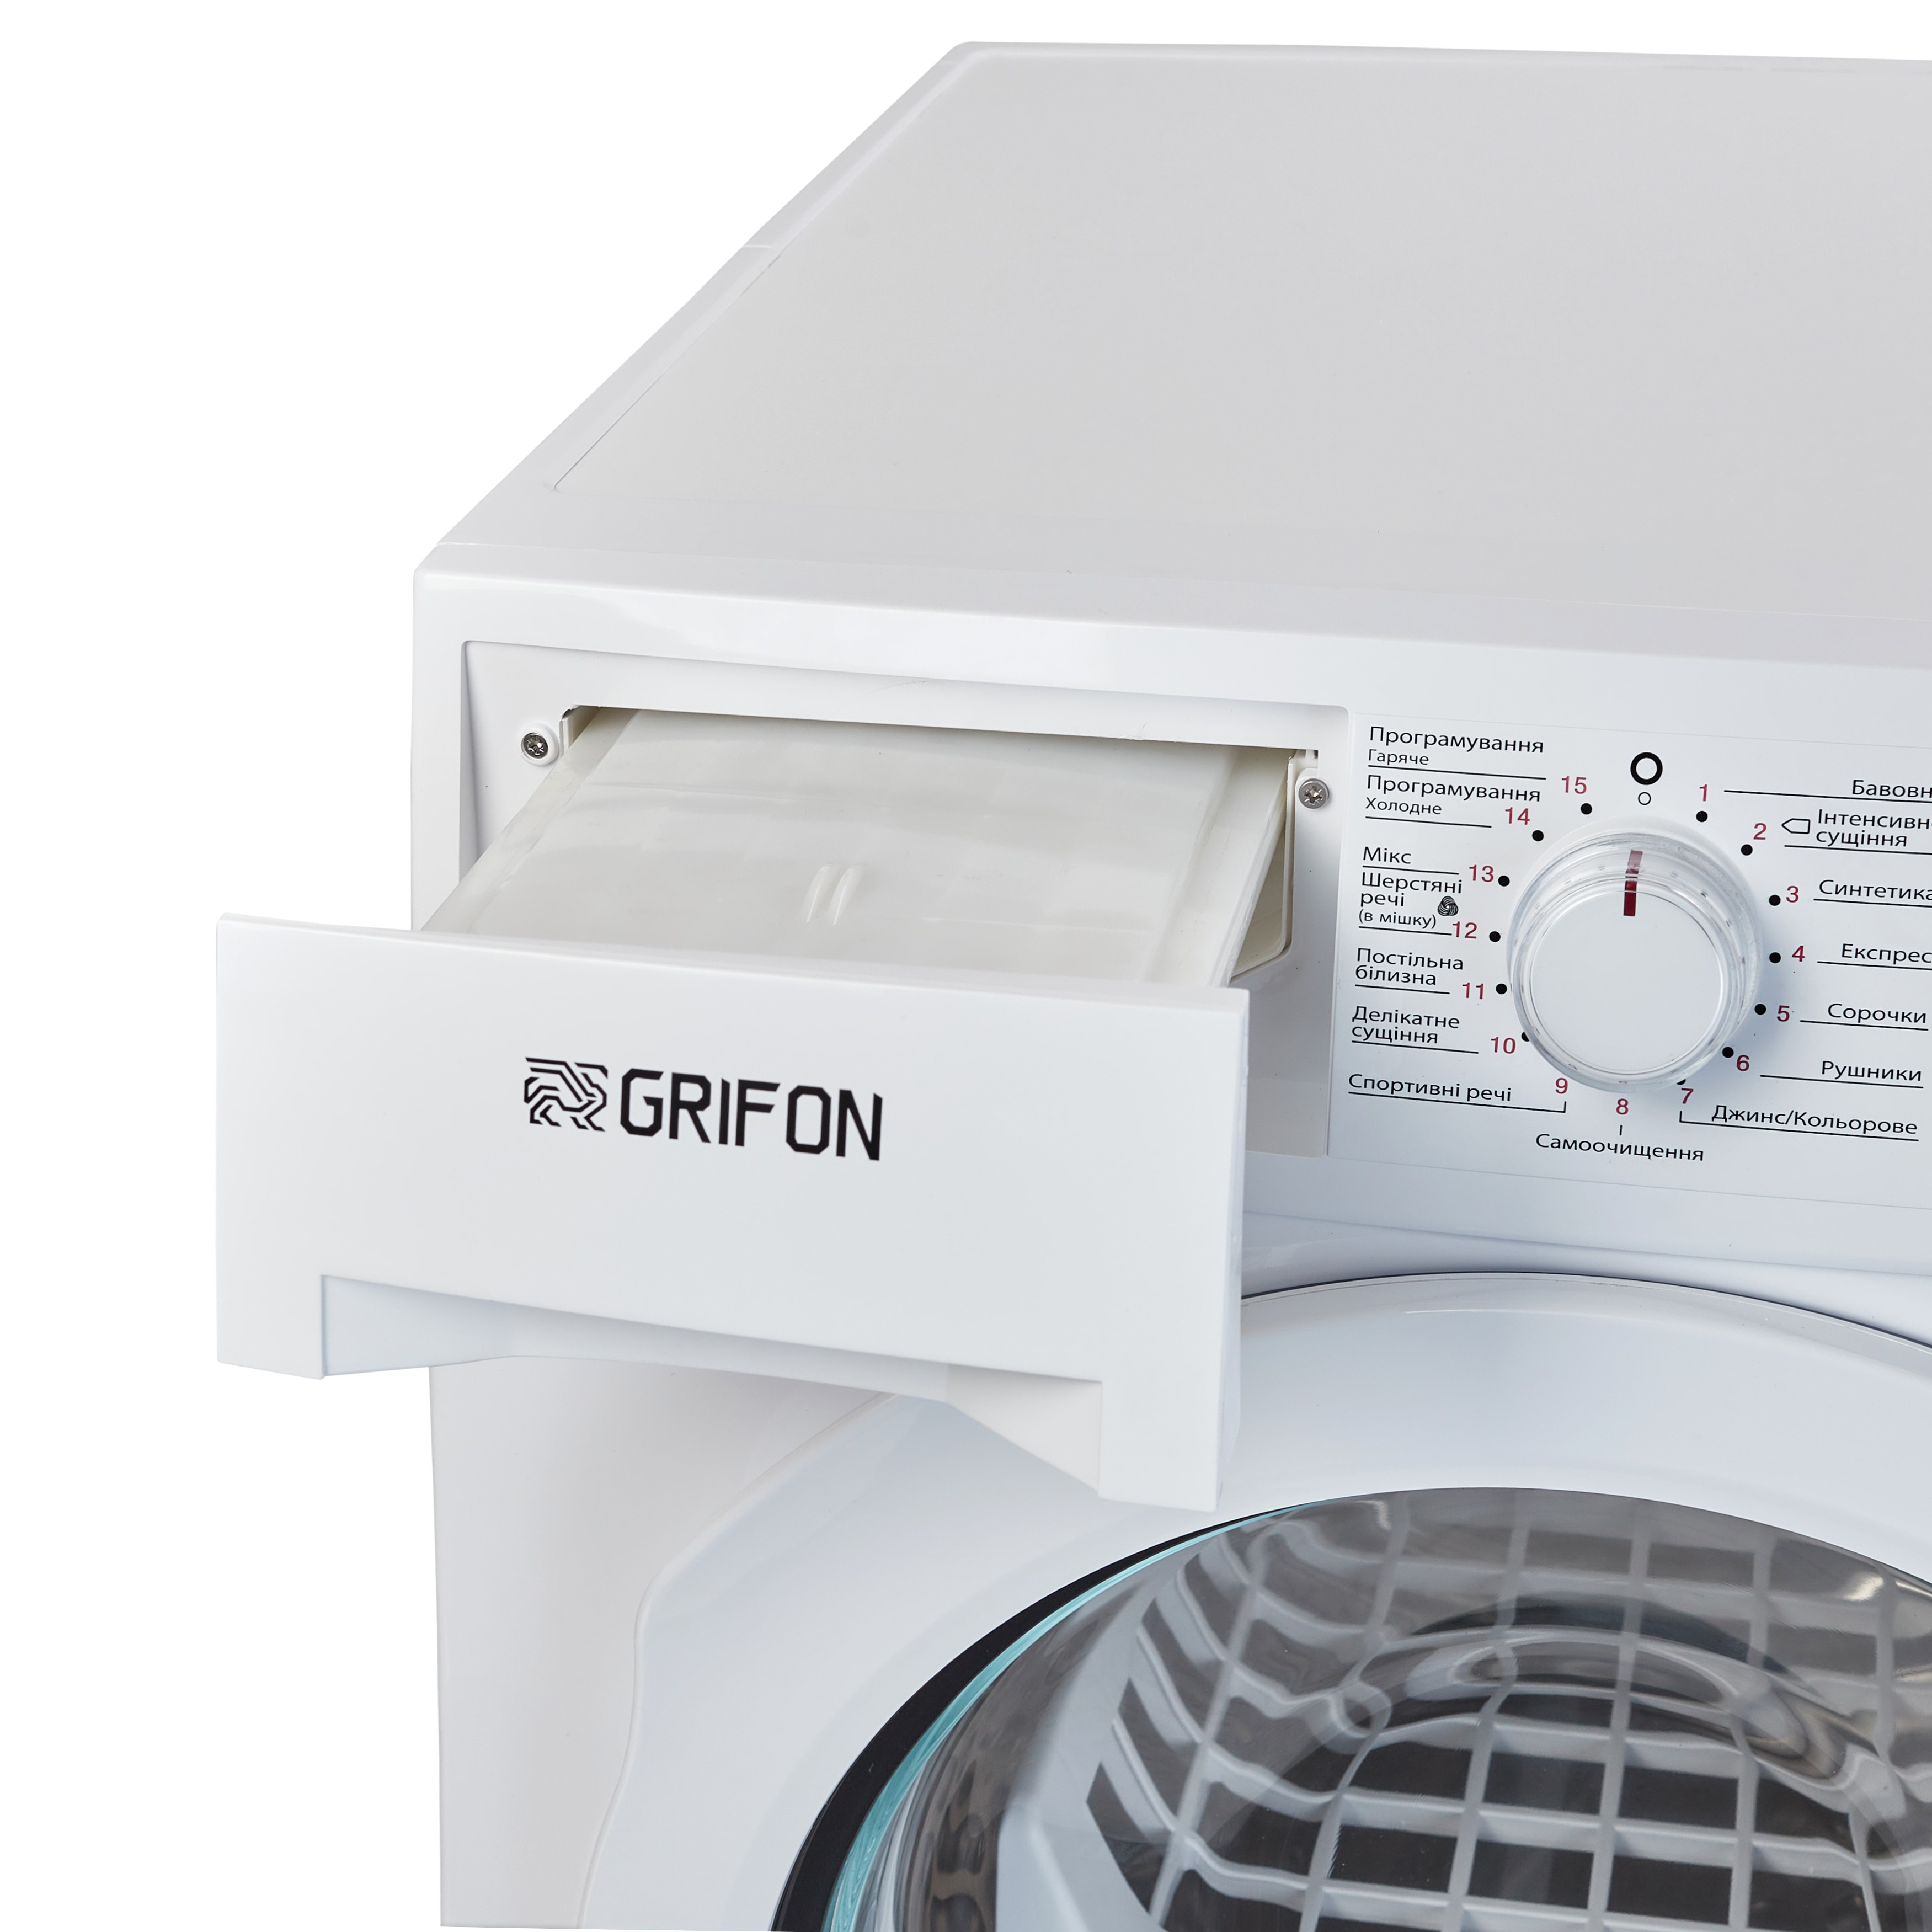 Сушильна машина Grifon GHPD-9 характеристики - фотографія 7